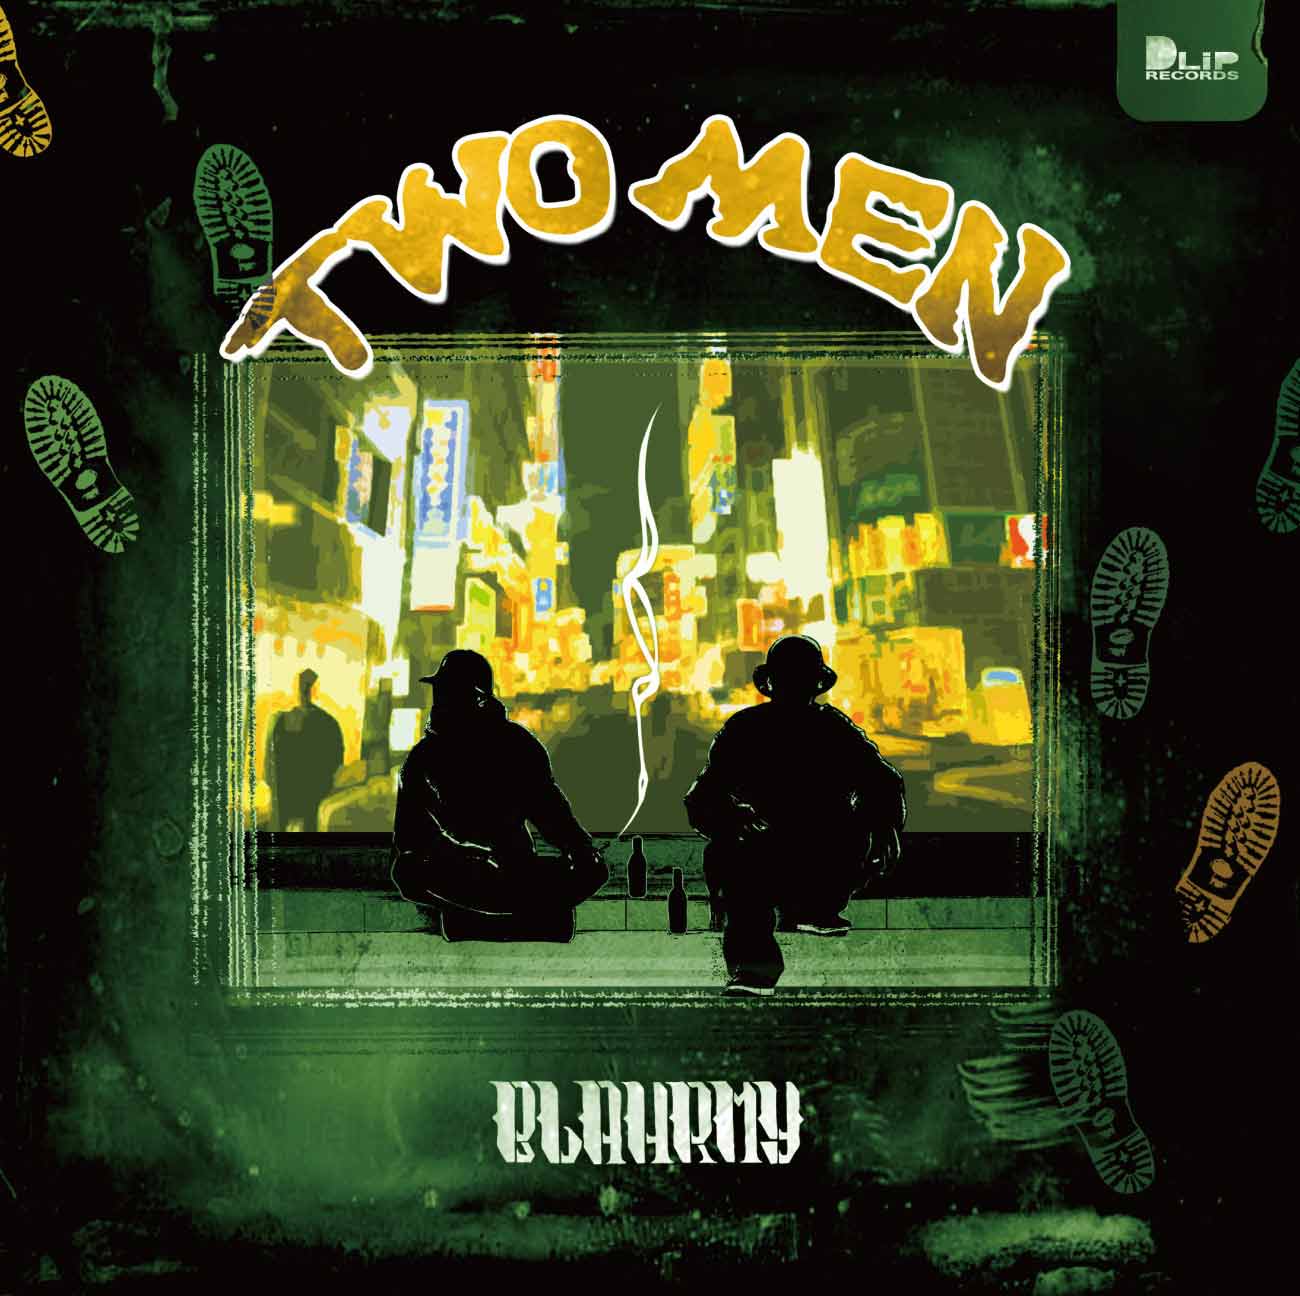 BLAHRMY「TWO MEN」